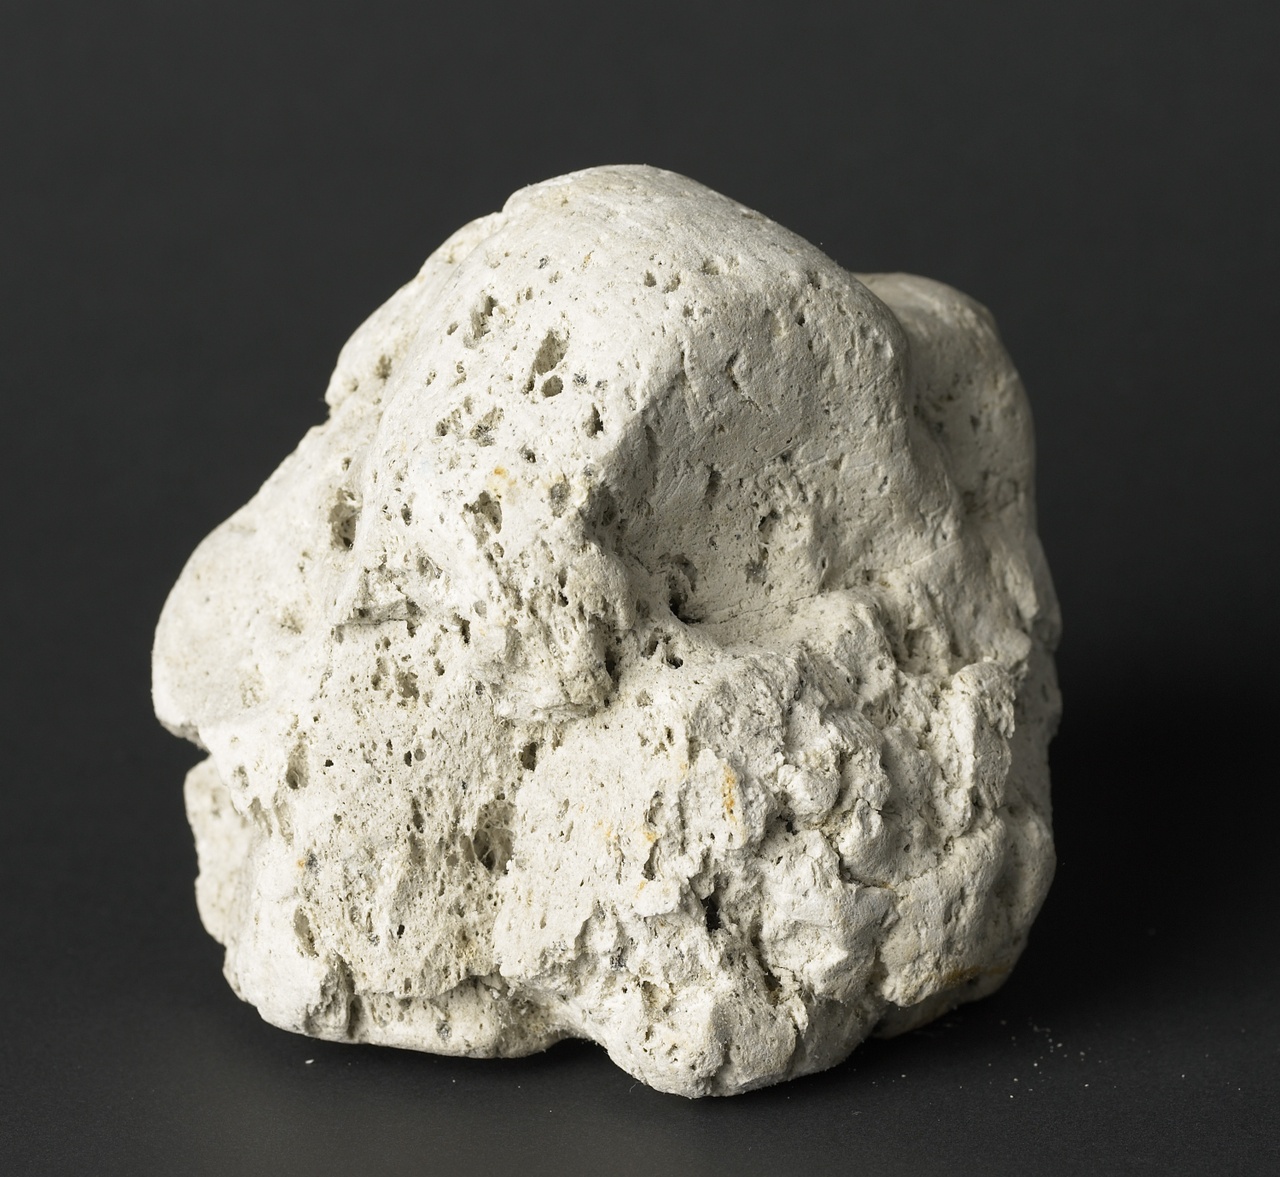 Klomp puimsteen afkomstig van de uitbarsting van de vulkaan Krakatau op 26/27 augustus 1883